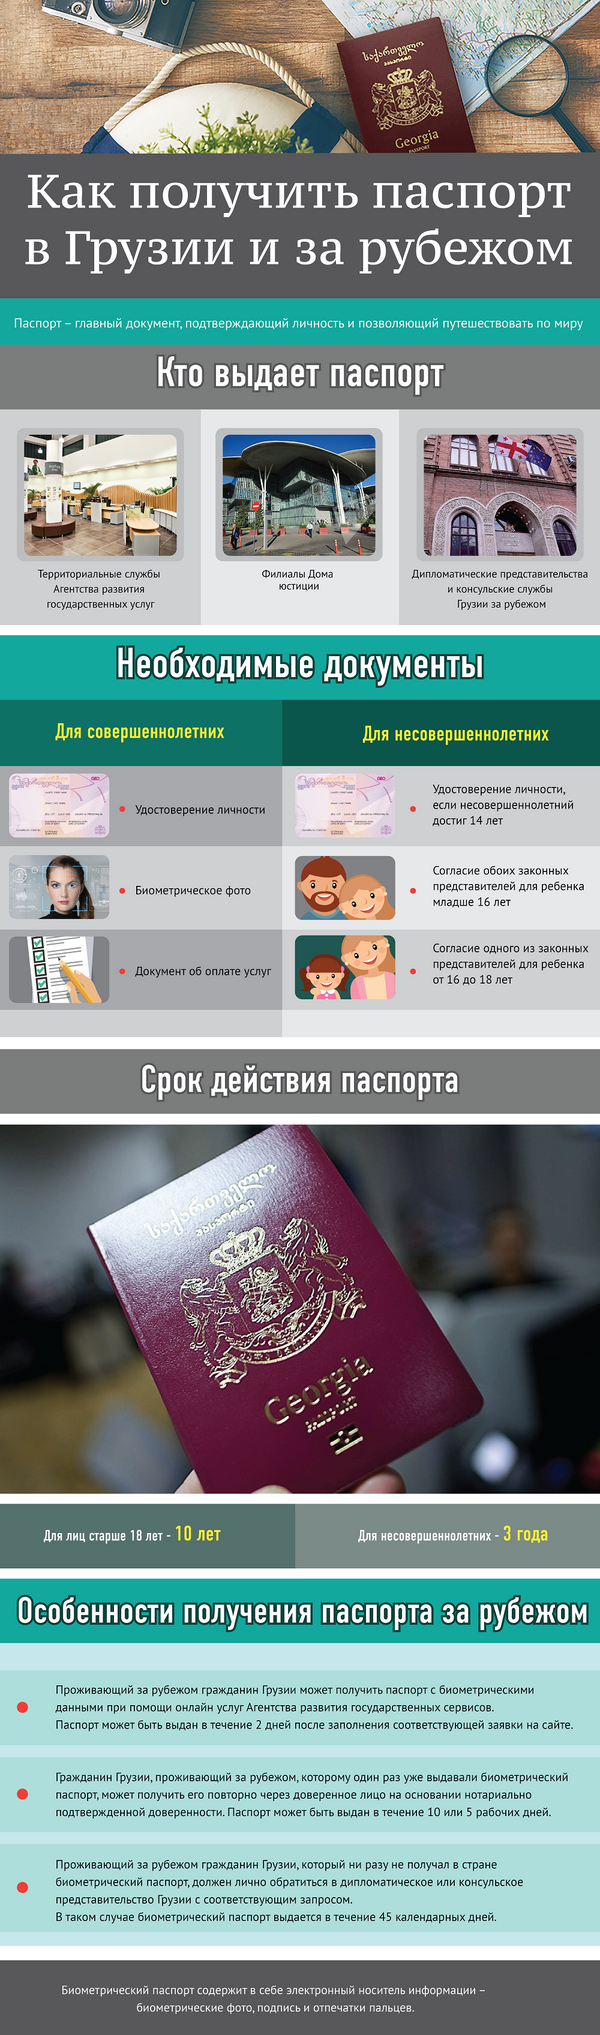 Как получить паспорт в Грузии и за рубежом - Sputnik Грузия